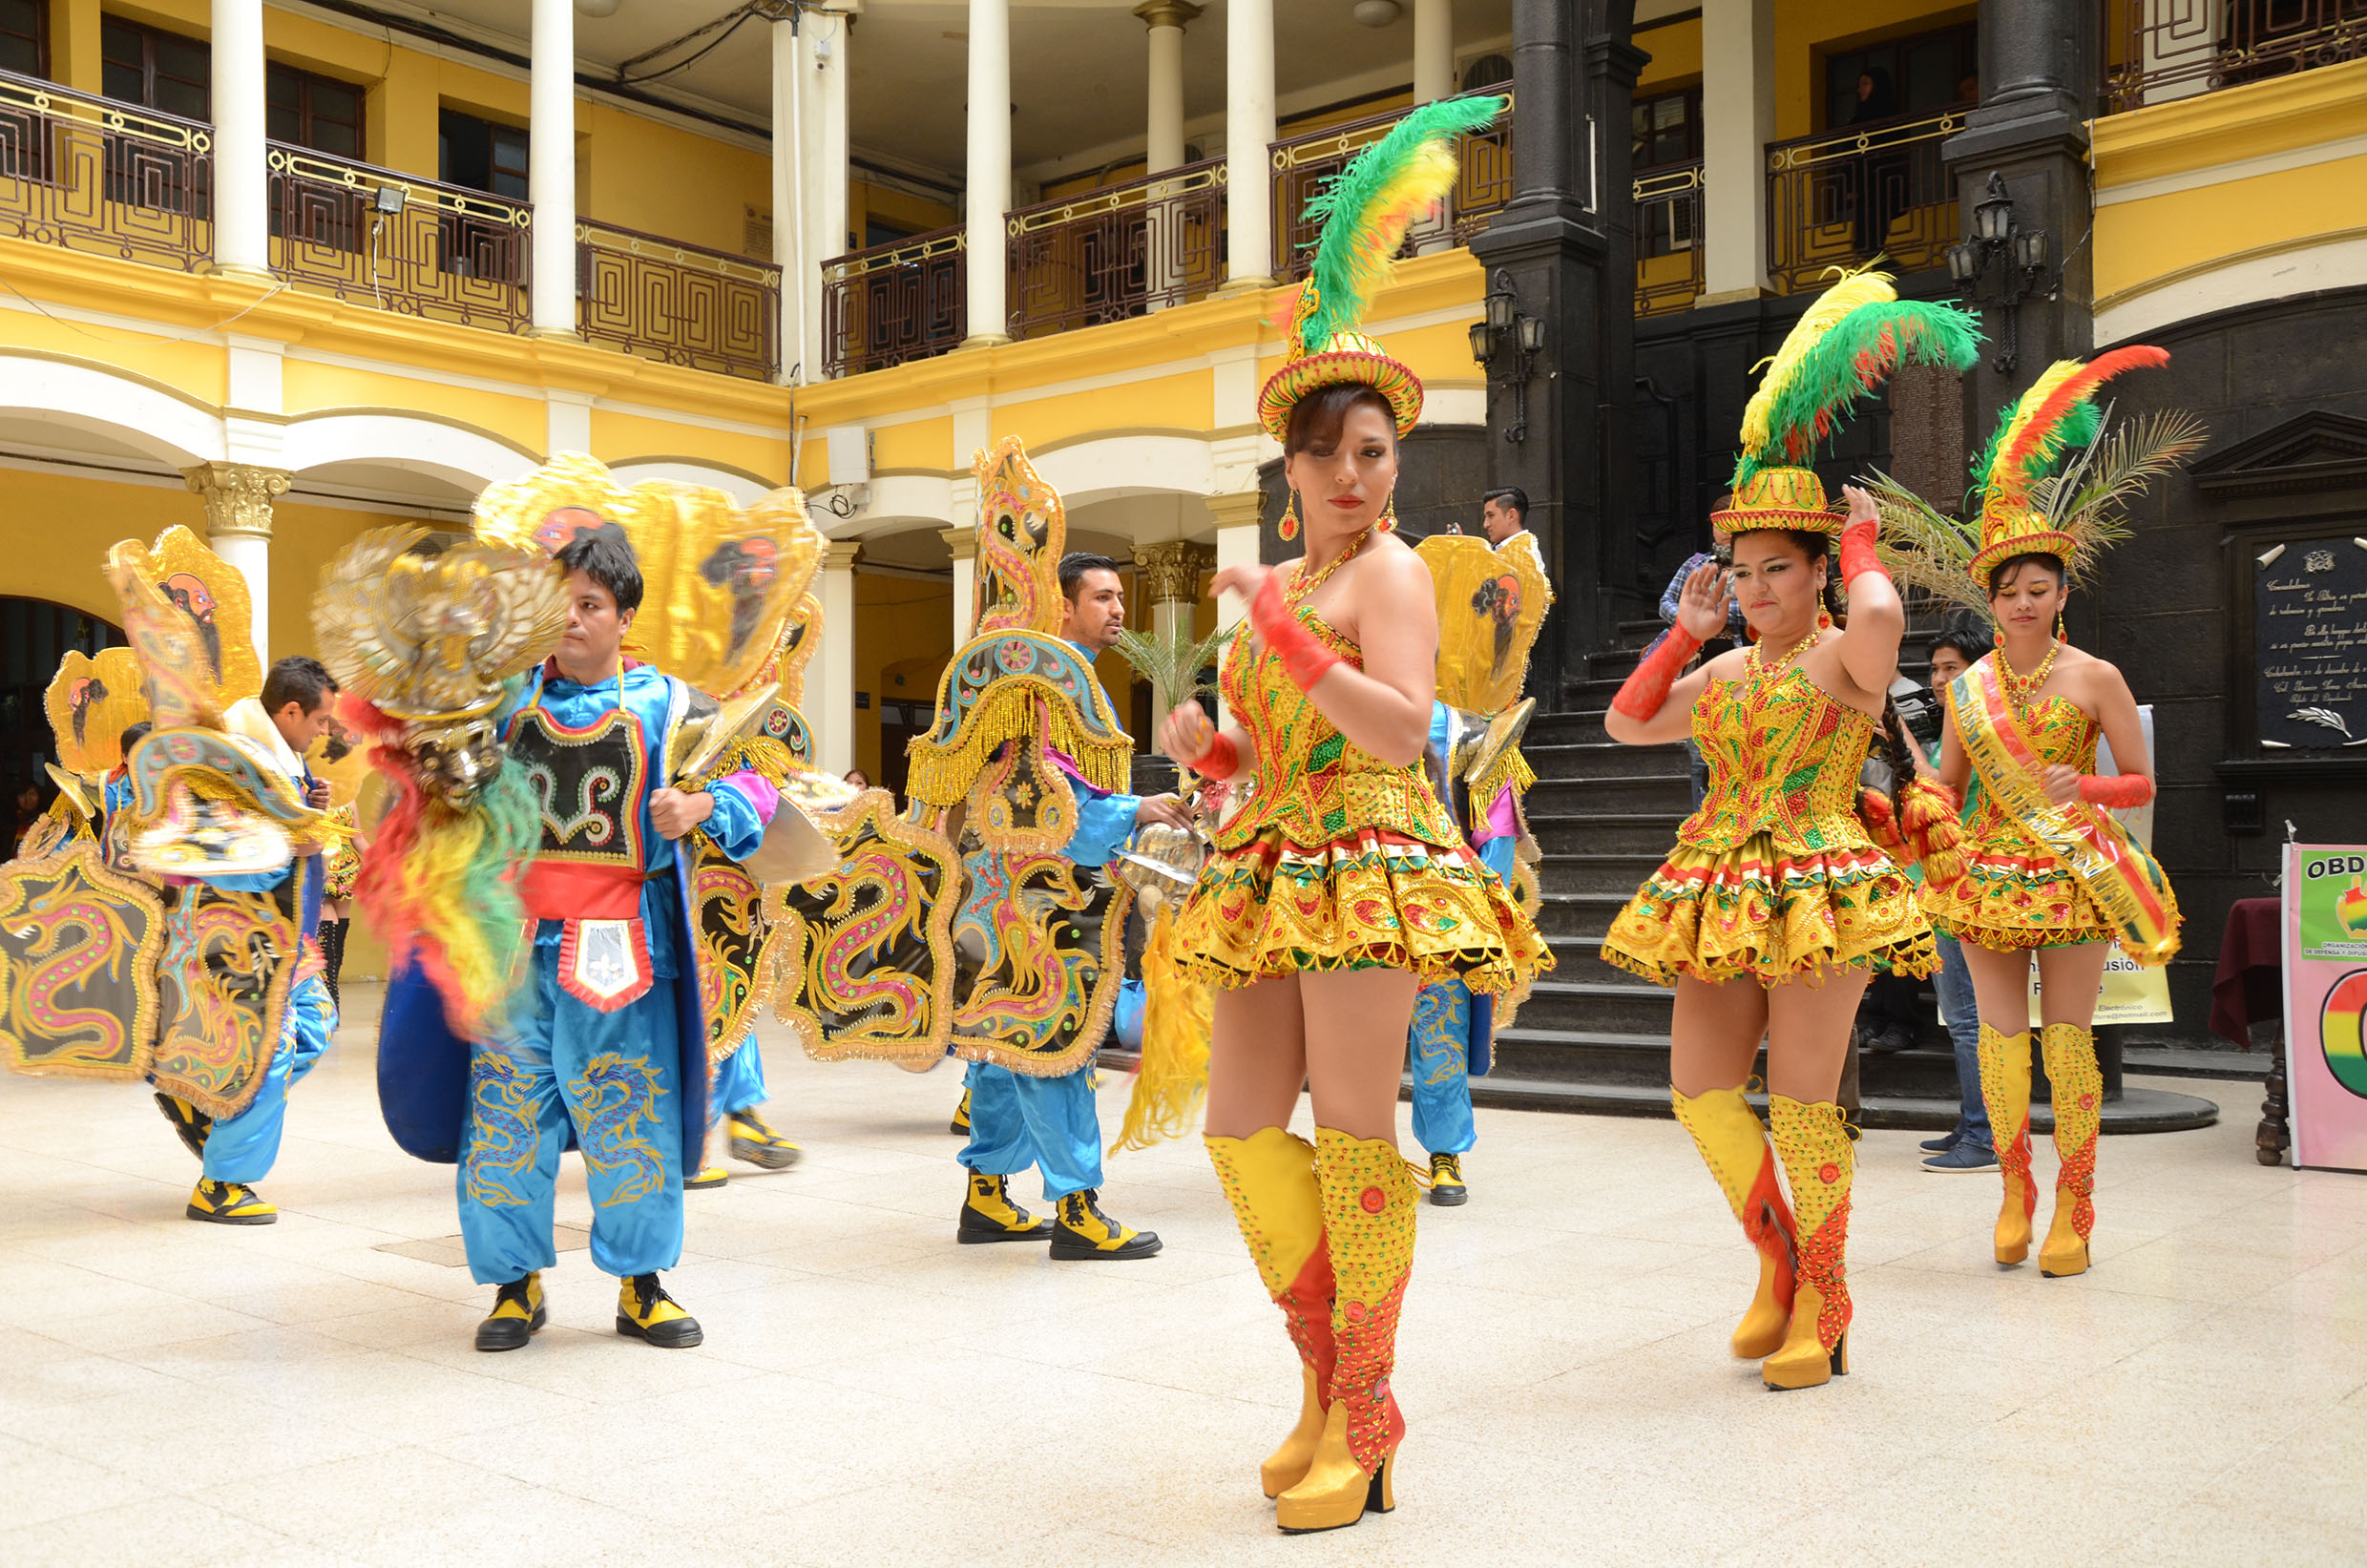 Resultado de imagen para Carnaval Sorprende 2018 en bolivia